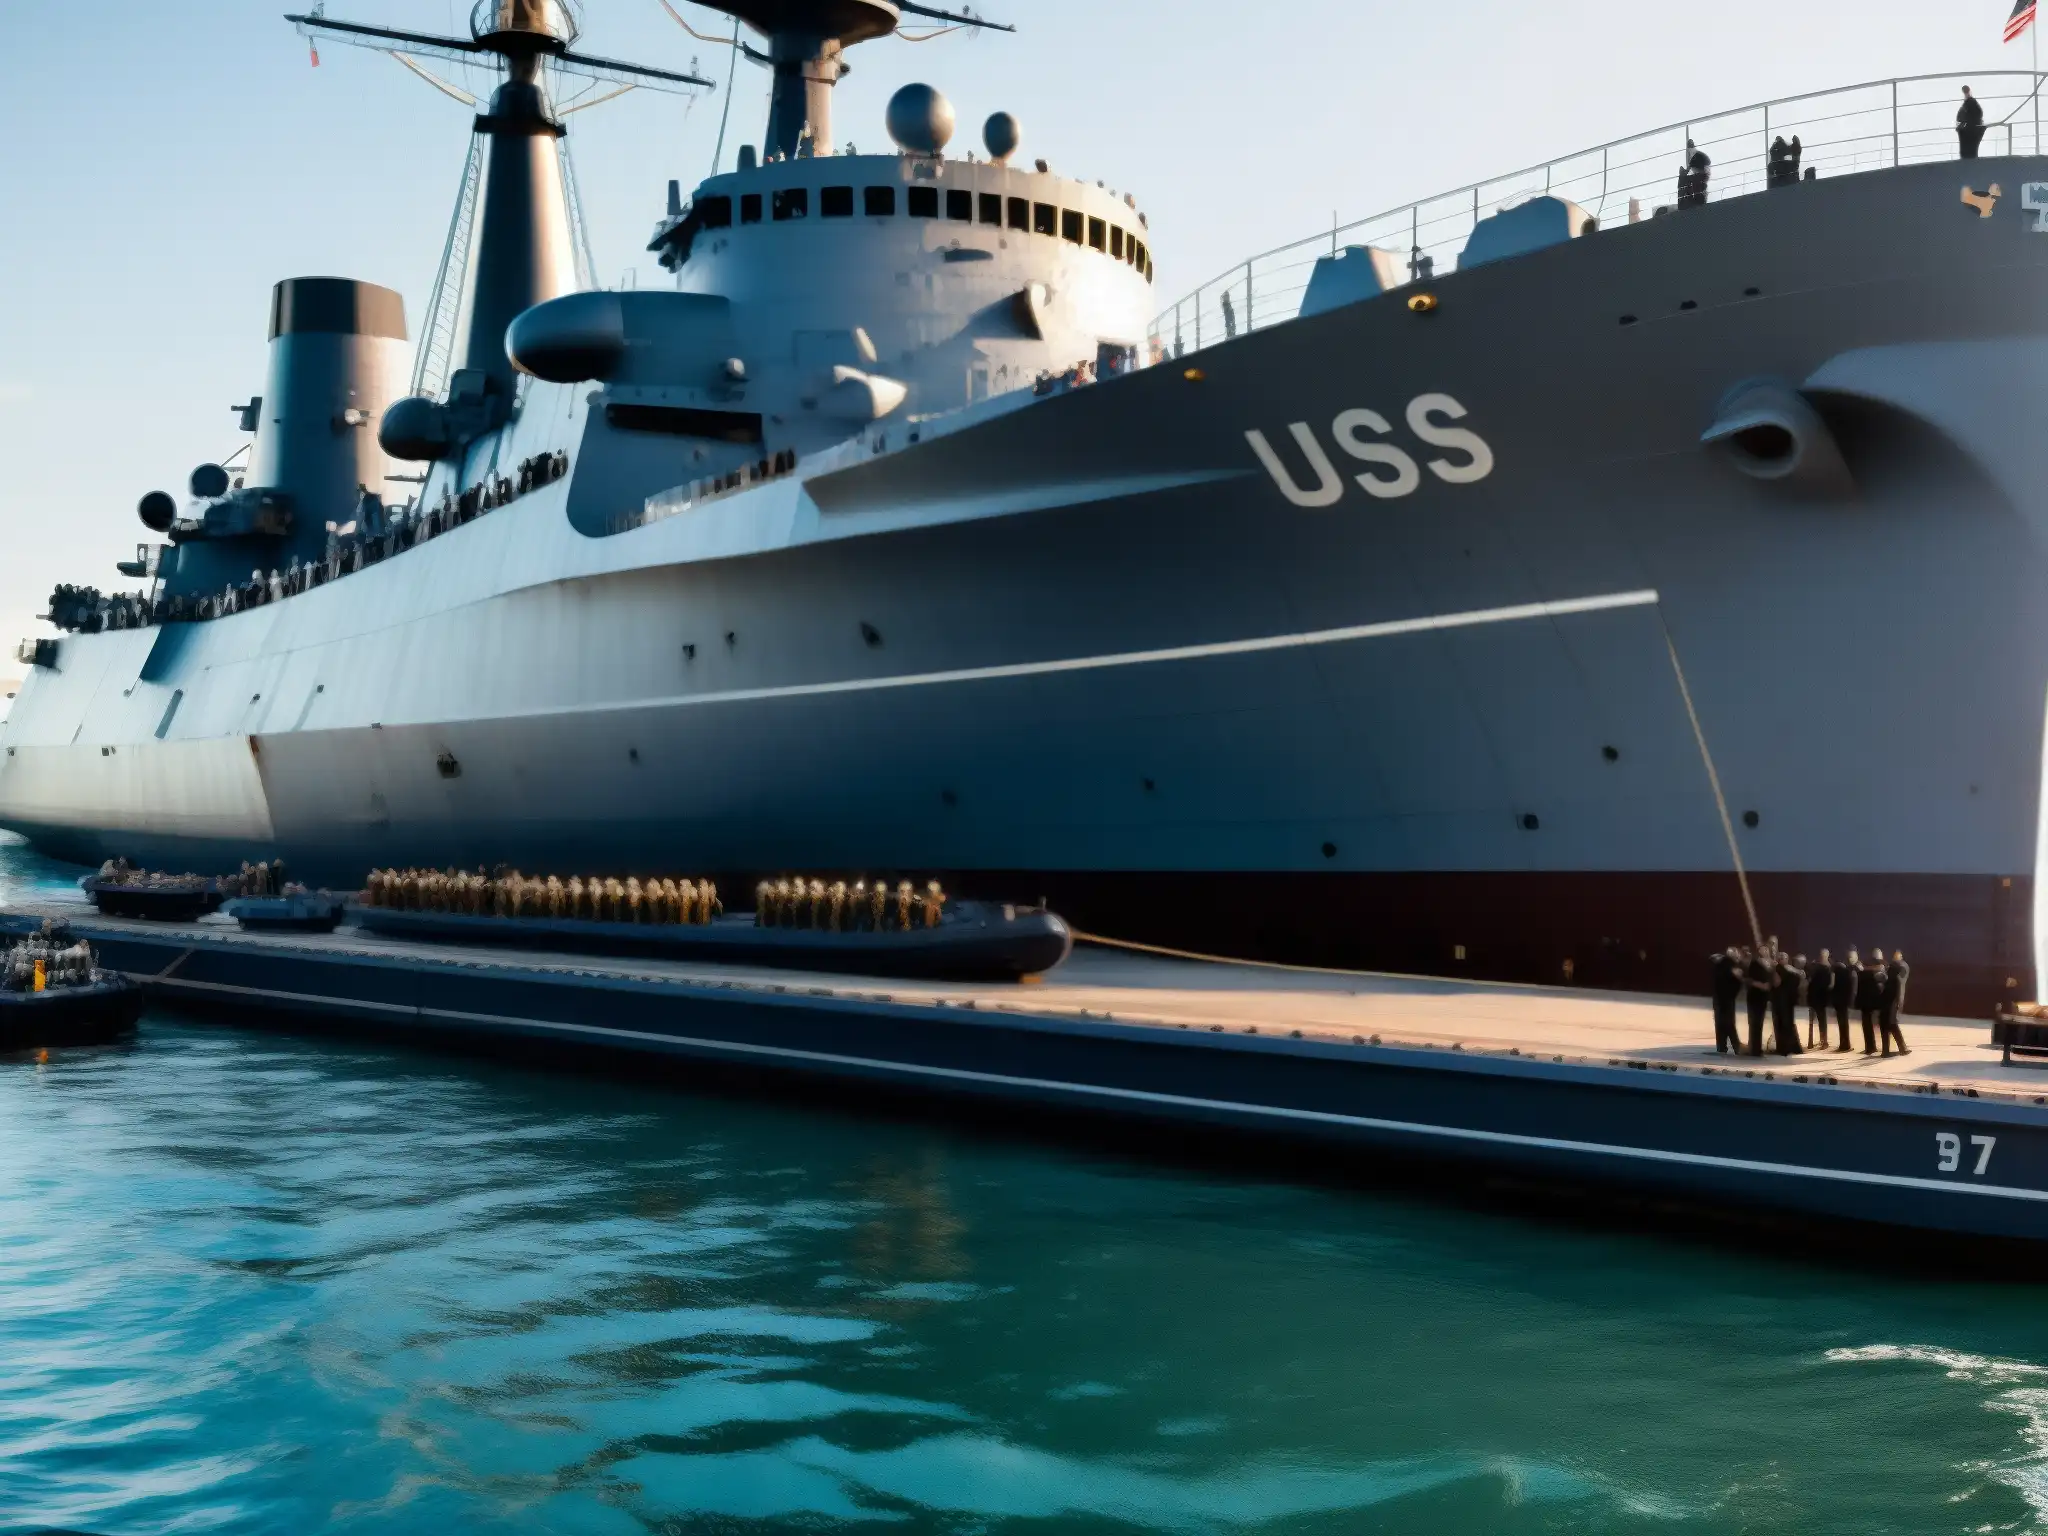 Imagen detallada de la USS Eldridge en el muelle, resaltando su escala y detalles históricos